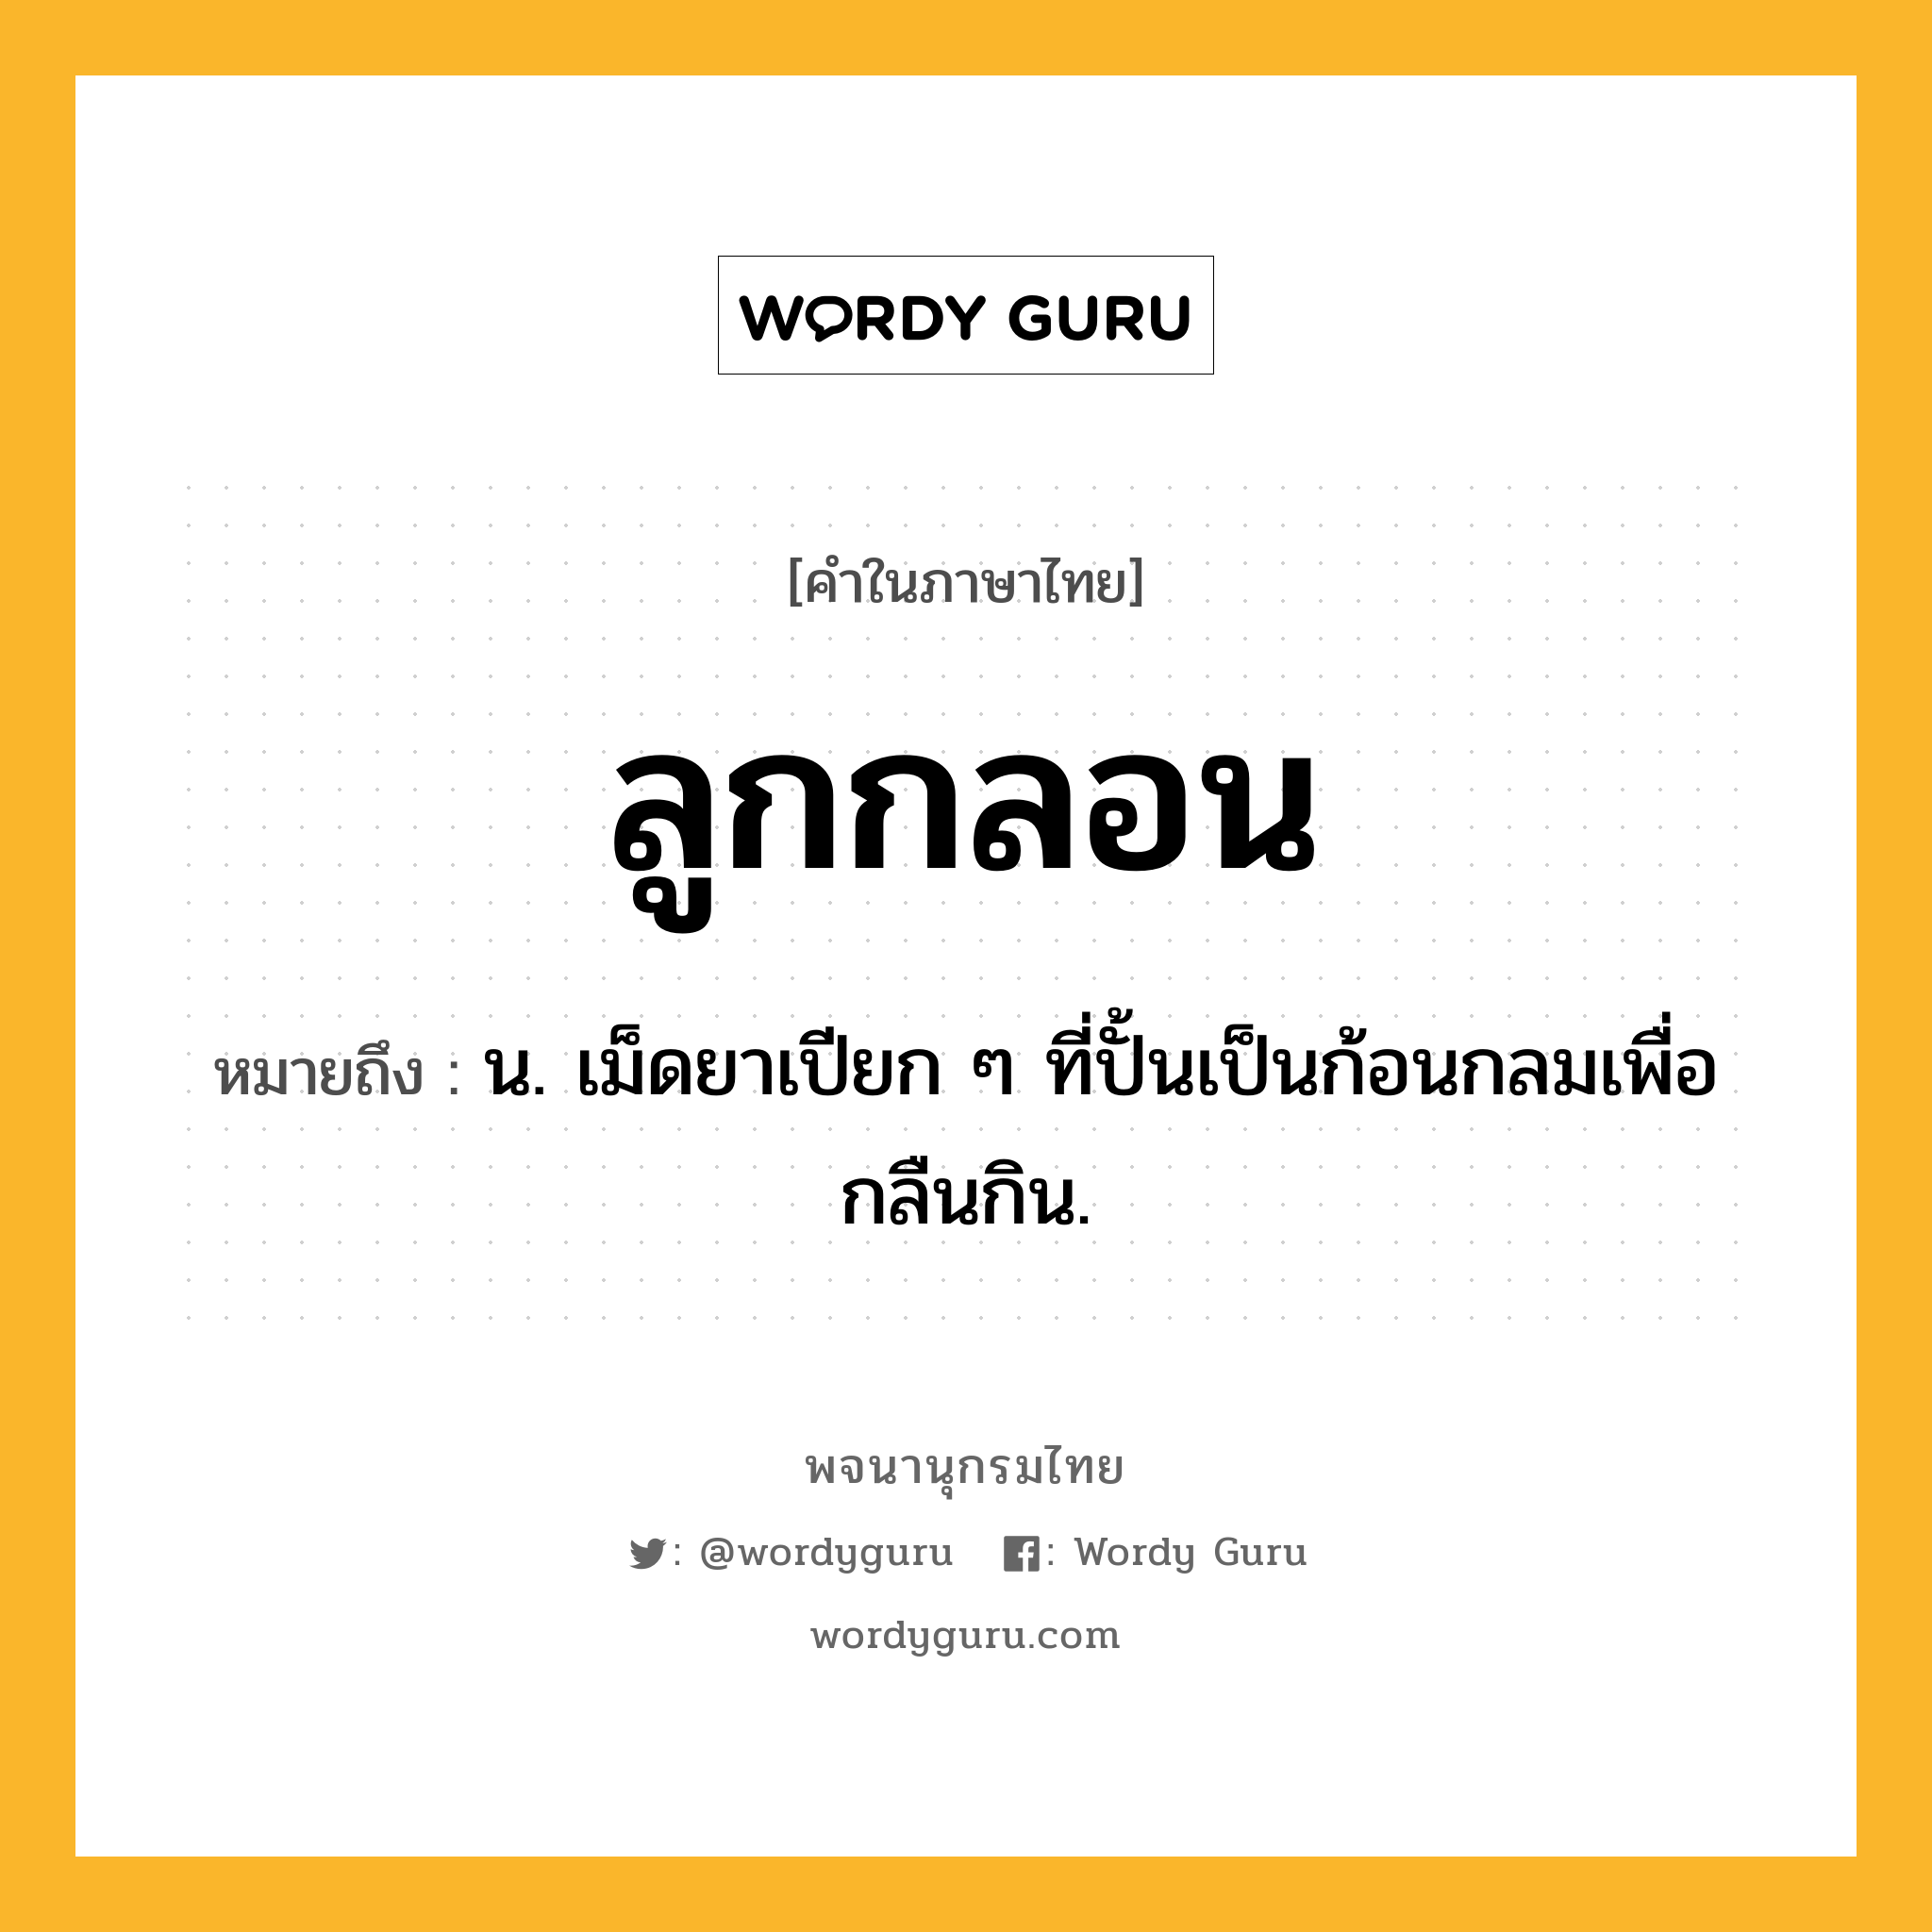 ลูกกลอน ความหมาย หมายถึงอะไร?, คำในภาษาไทย ลูกกลอน หมายถึง น. เม็ดยาเปียก ๆ ที่ปั้นเป็นก้อนกลมเพื่อกลืนกิน.